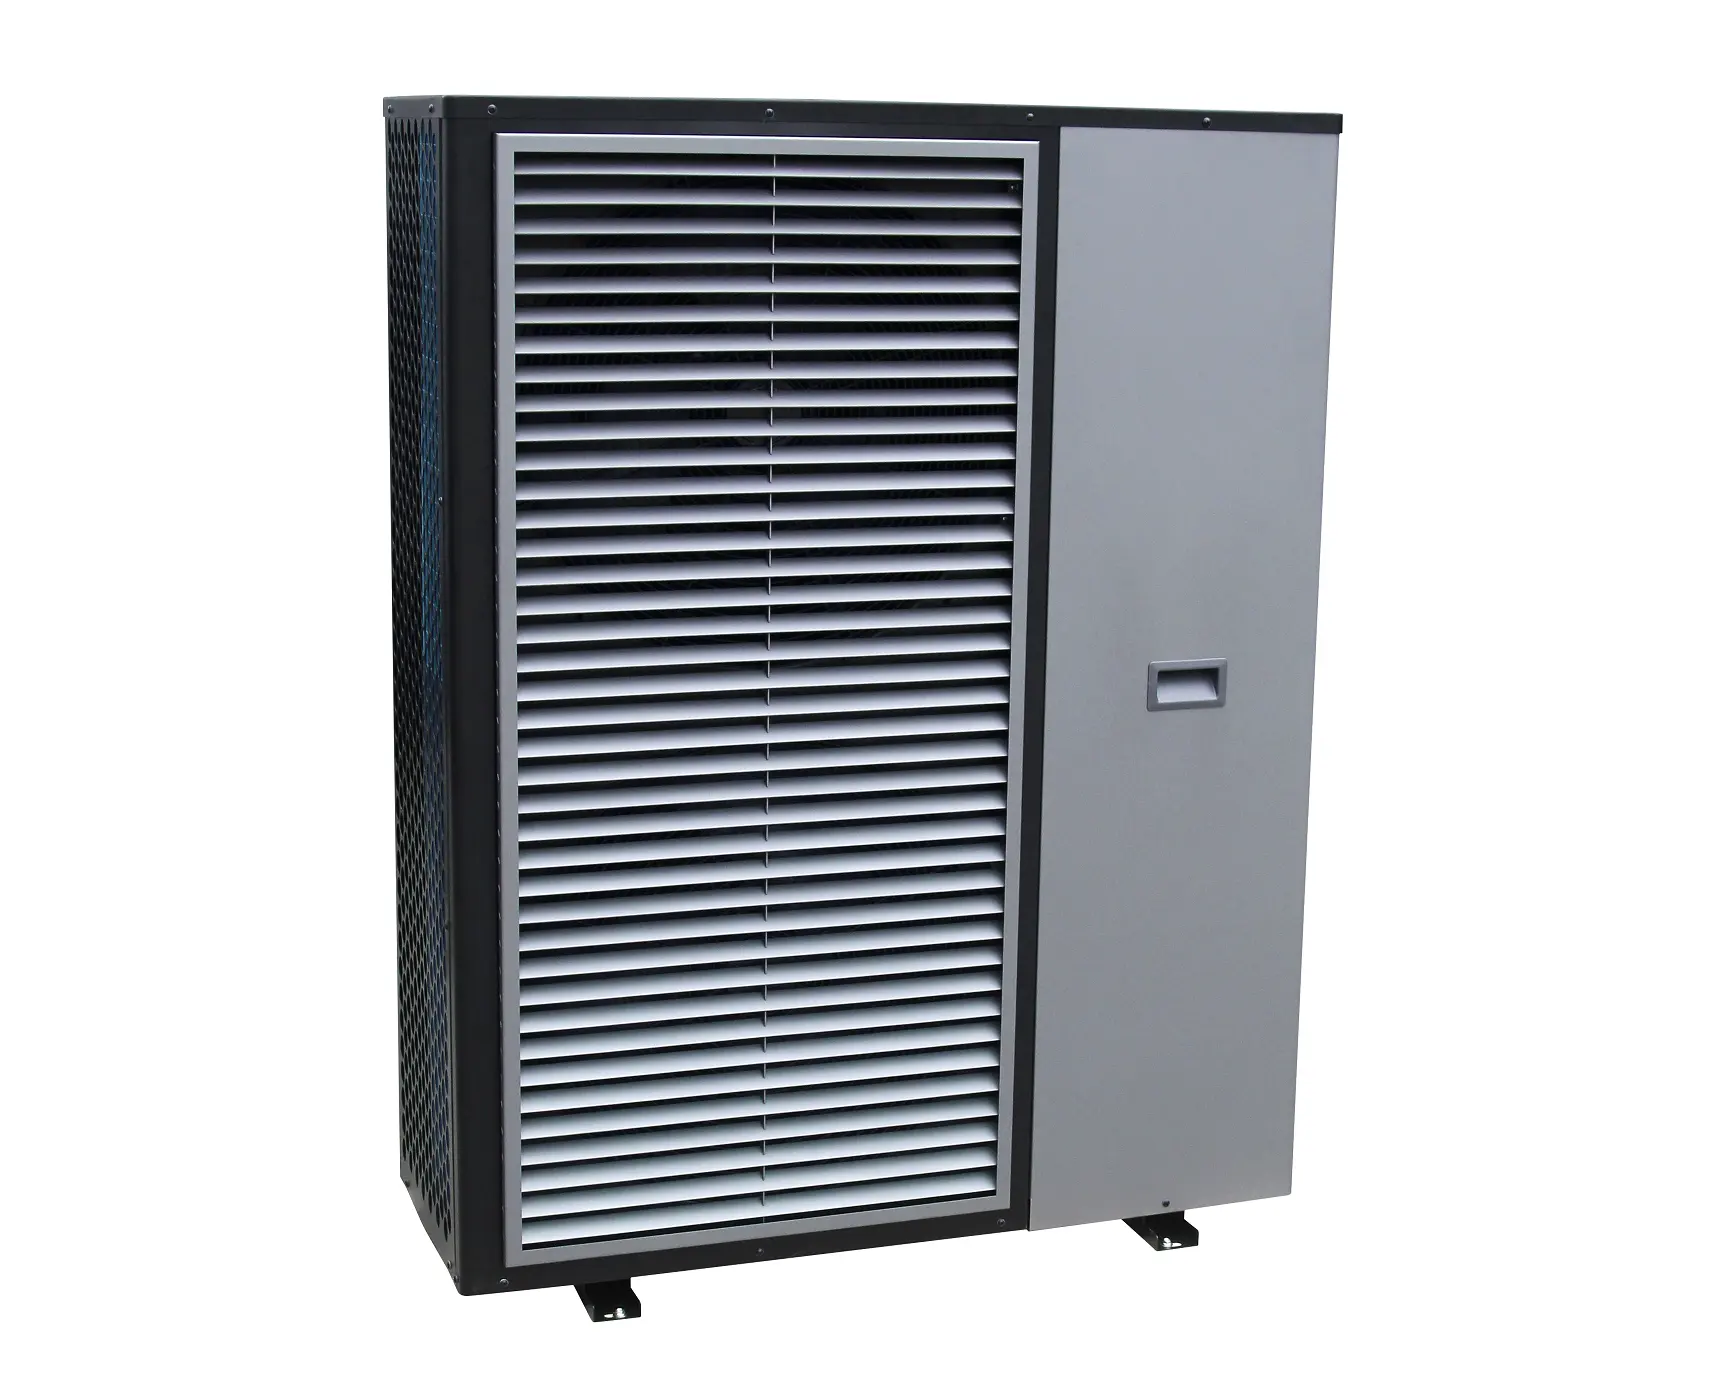 Werkseitige Direkt versorgung Eine geräuscharme Luft-Wasser-Wärmepumpe Mono block Wechsel richter 12kW Wärmepumpe r 290